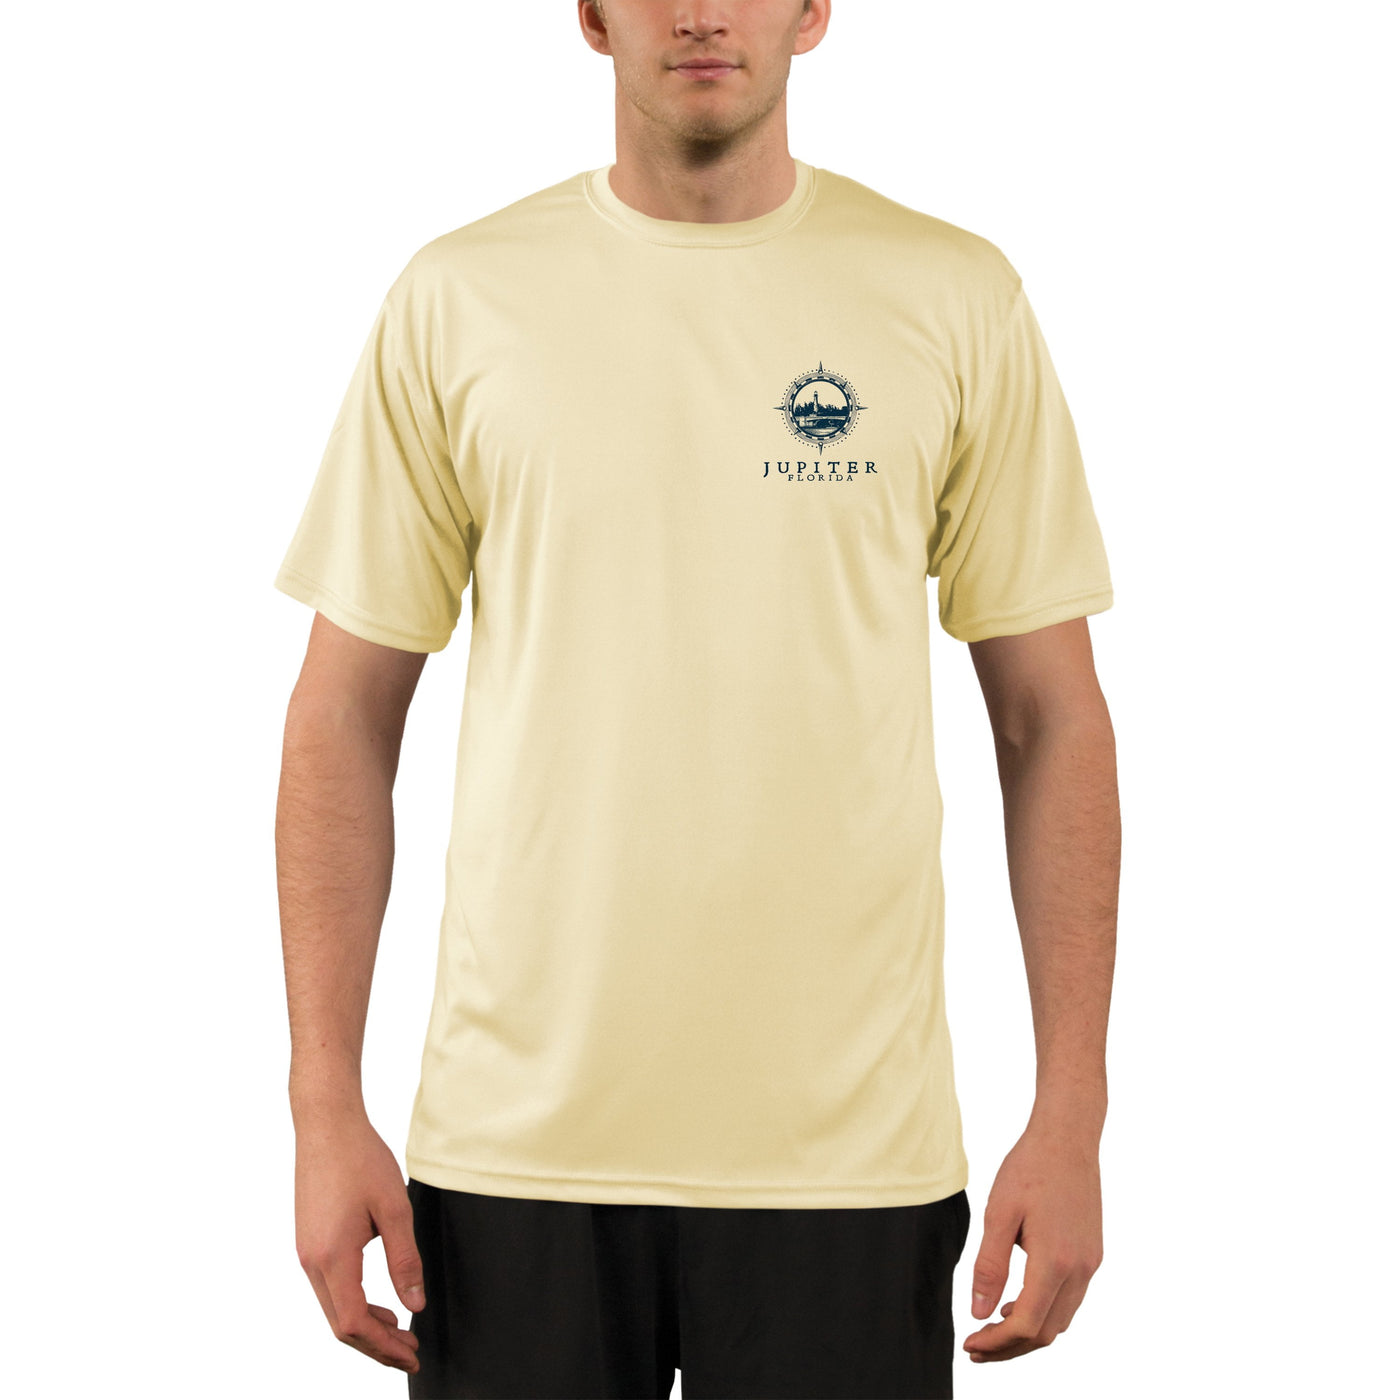 Compass Vintage Jupiter Men's UPF 50+ Short Sleeve T-shirt